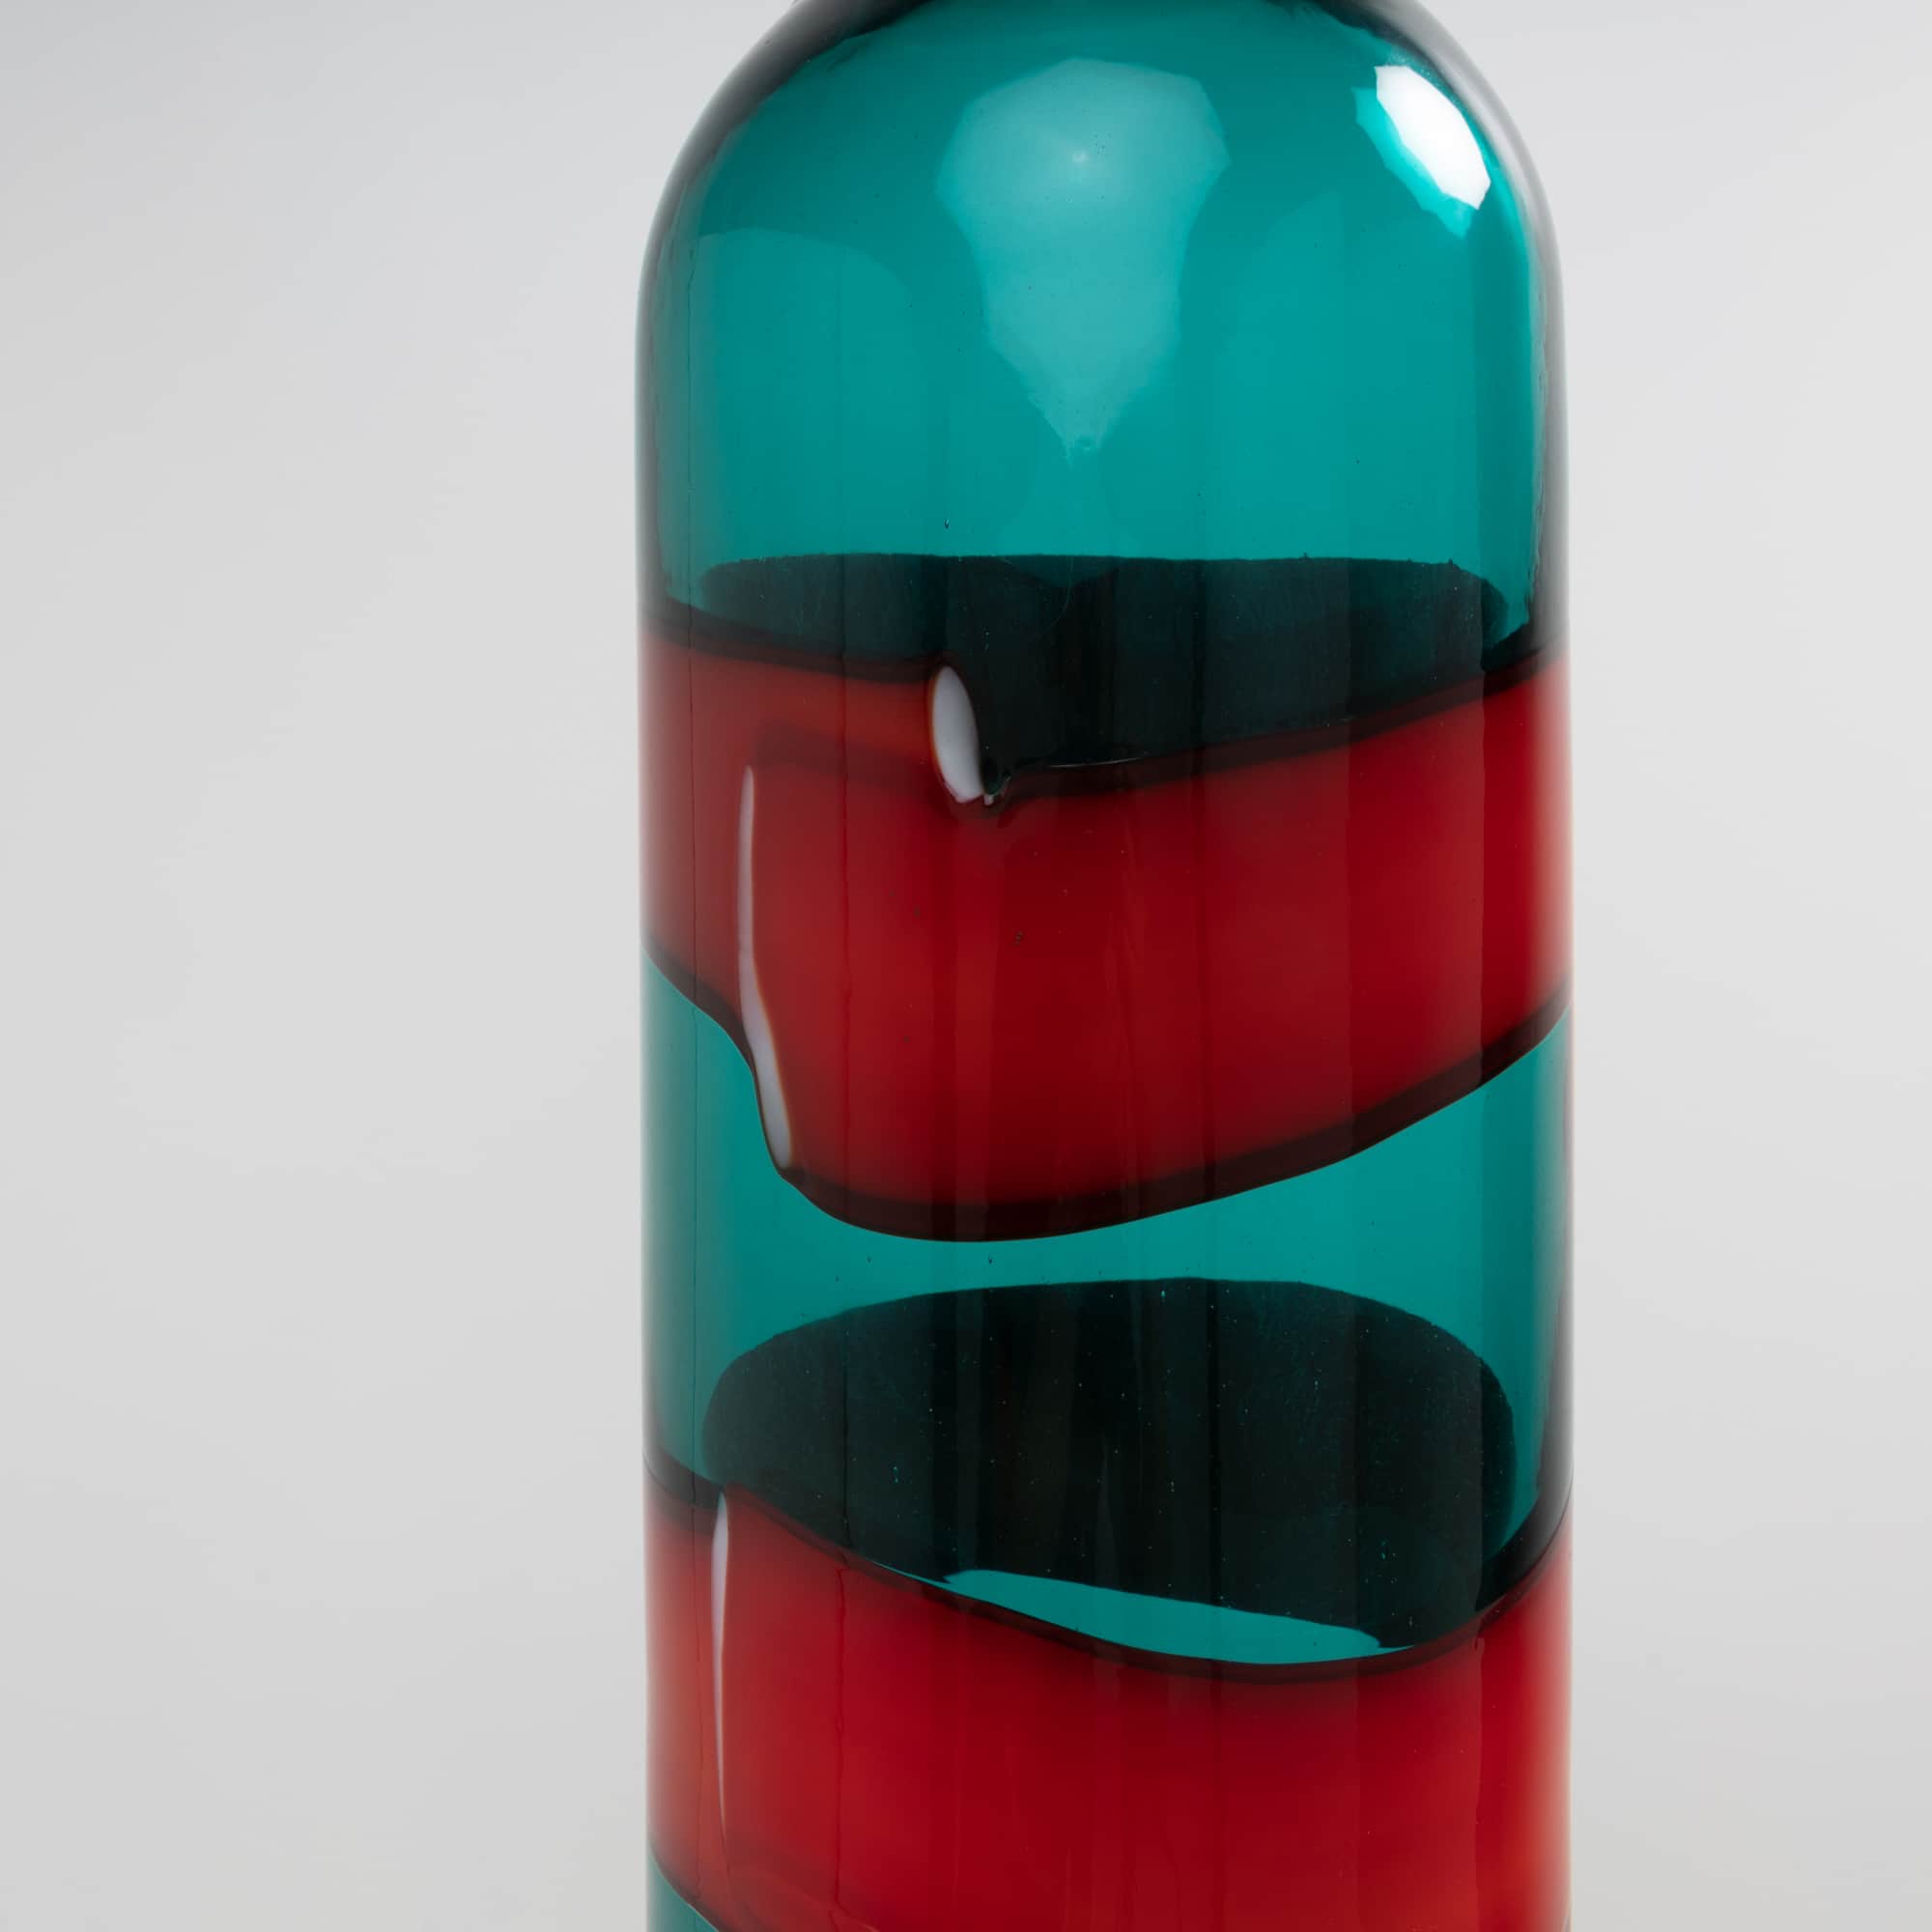 UE5_23 Bandes horizontales bouteille verte avec bande rouge Fulvio Bianconi